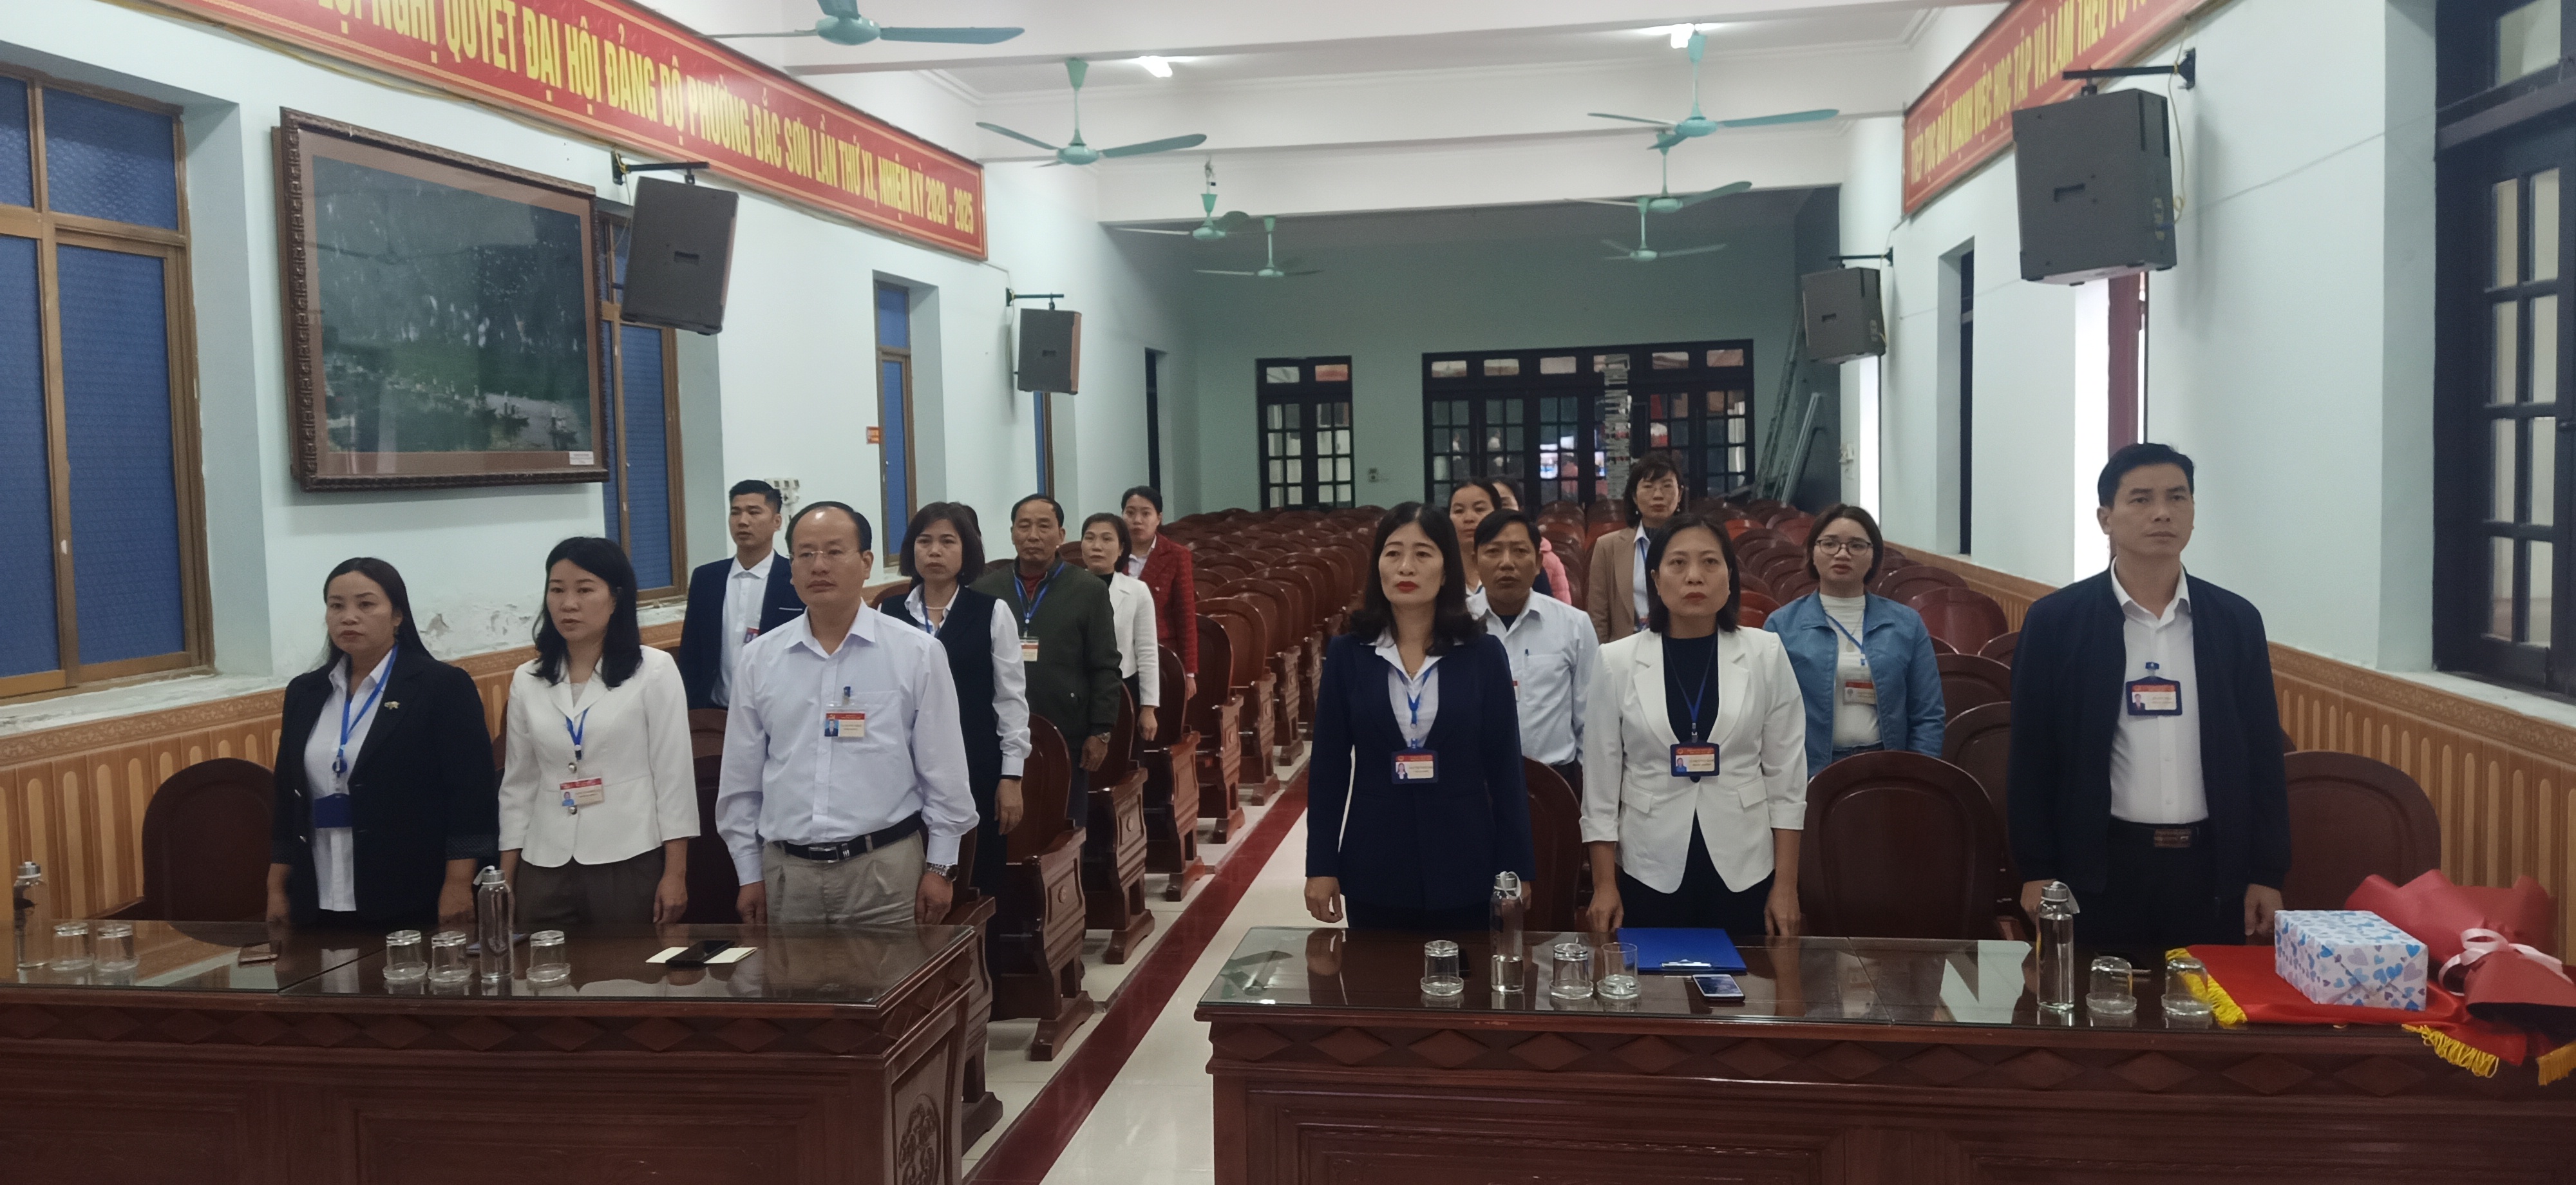 Đảng ủy, HĐND, UBND, UBMTTQVN phường Bắc Sơn tổ chức buổi sinh hoạt chính trị dưới nghi thức chào cờ đầu tuần tháng 12, năm 2023